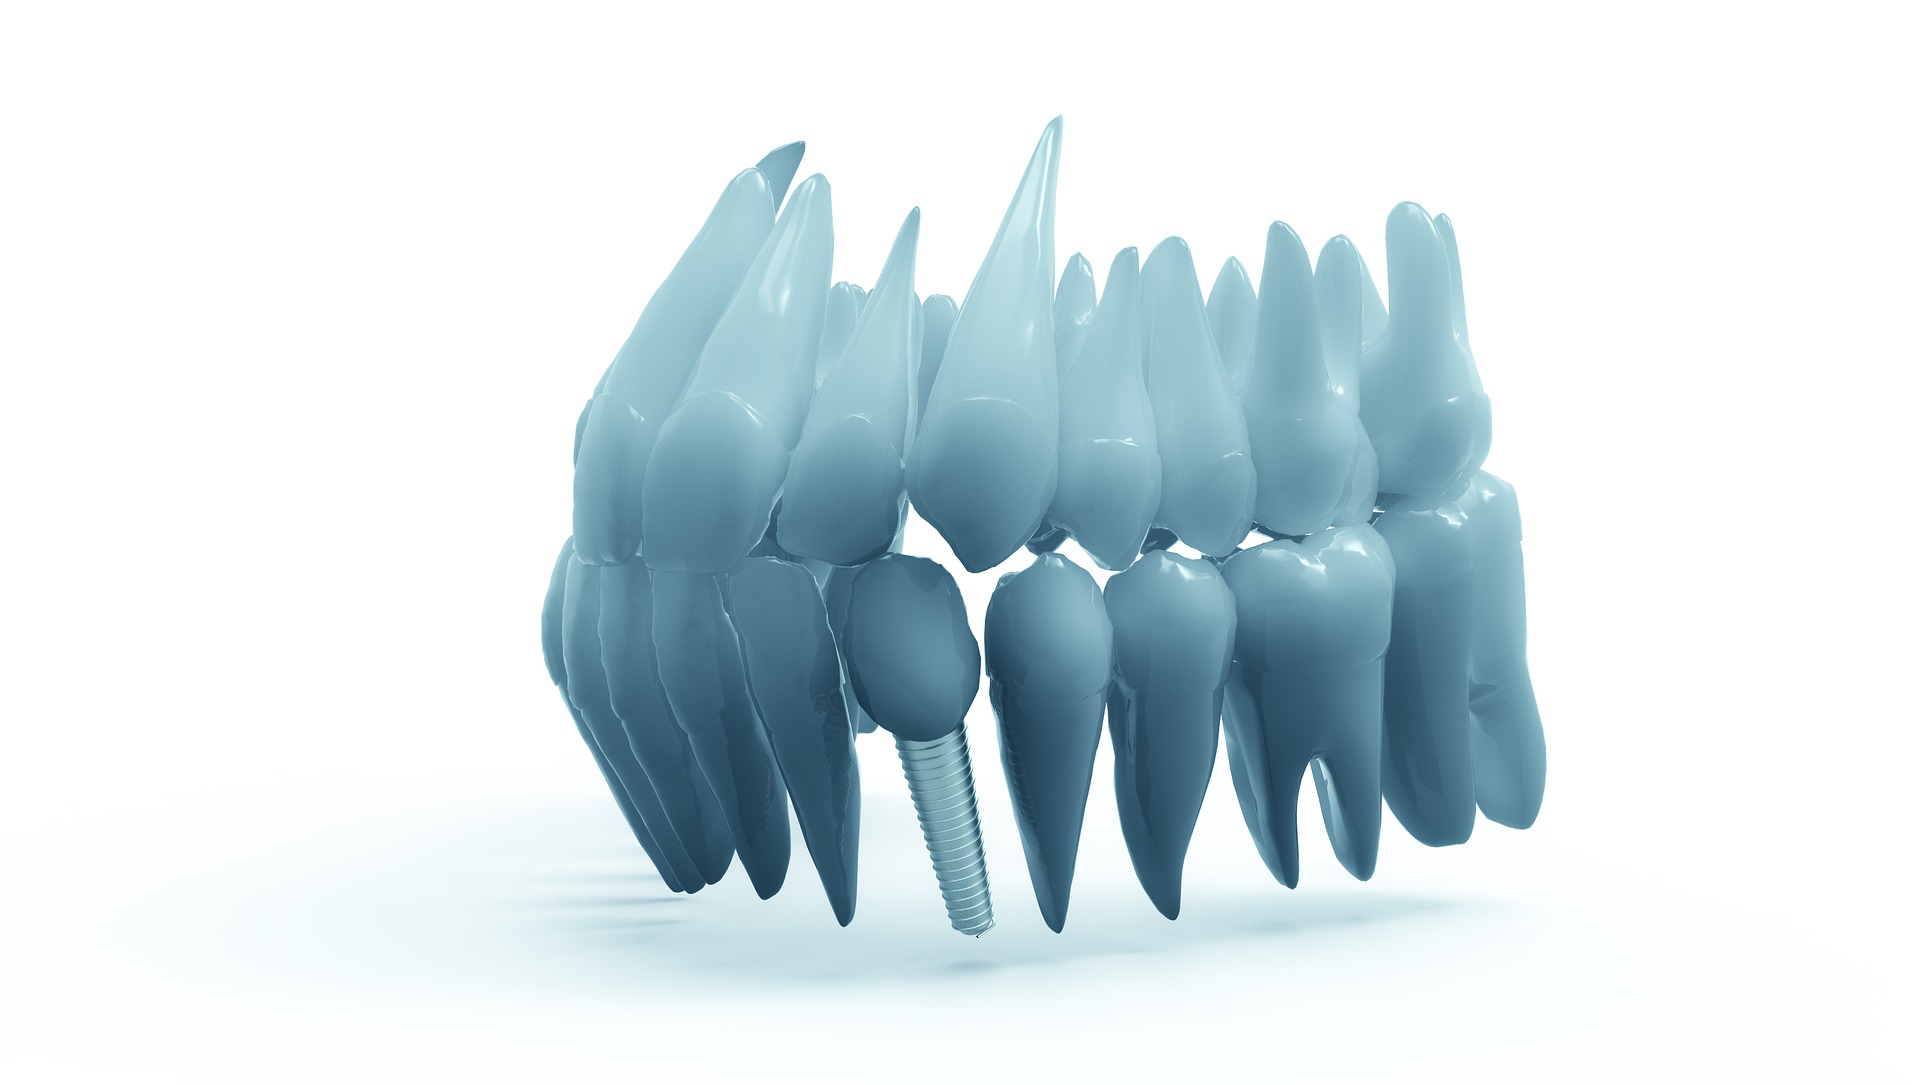 Proces zakładania implantów zębowych